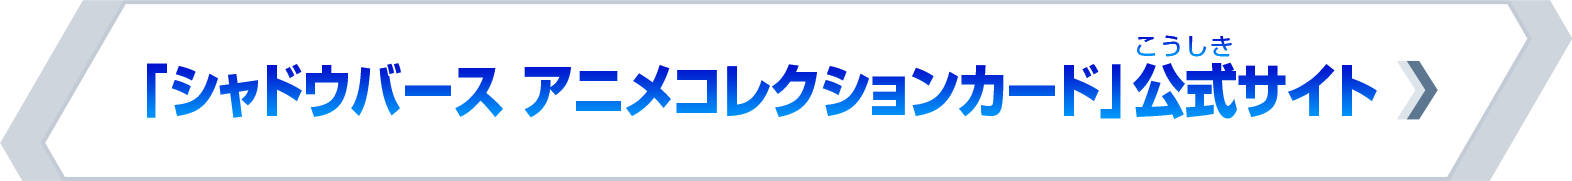 「シャドウバース アニメコレクションカード」公式サイト